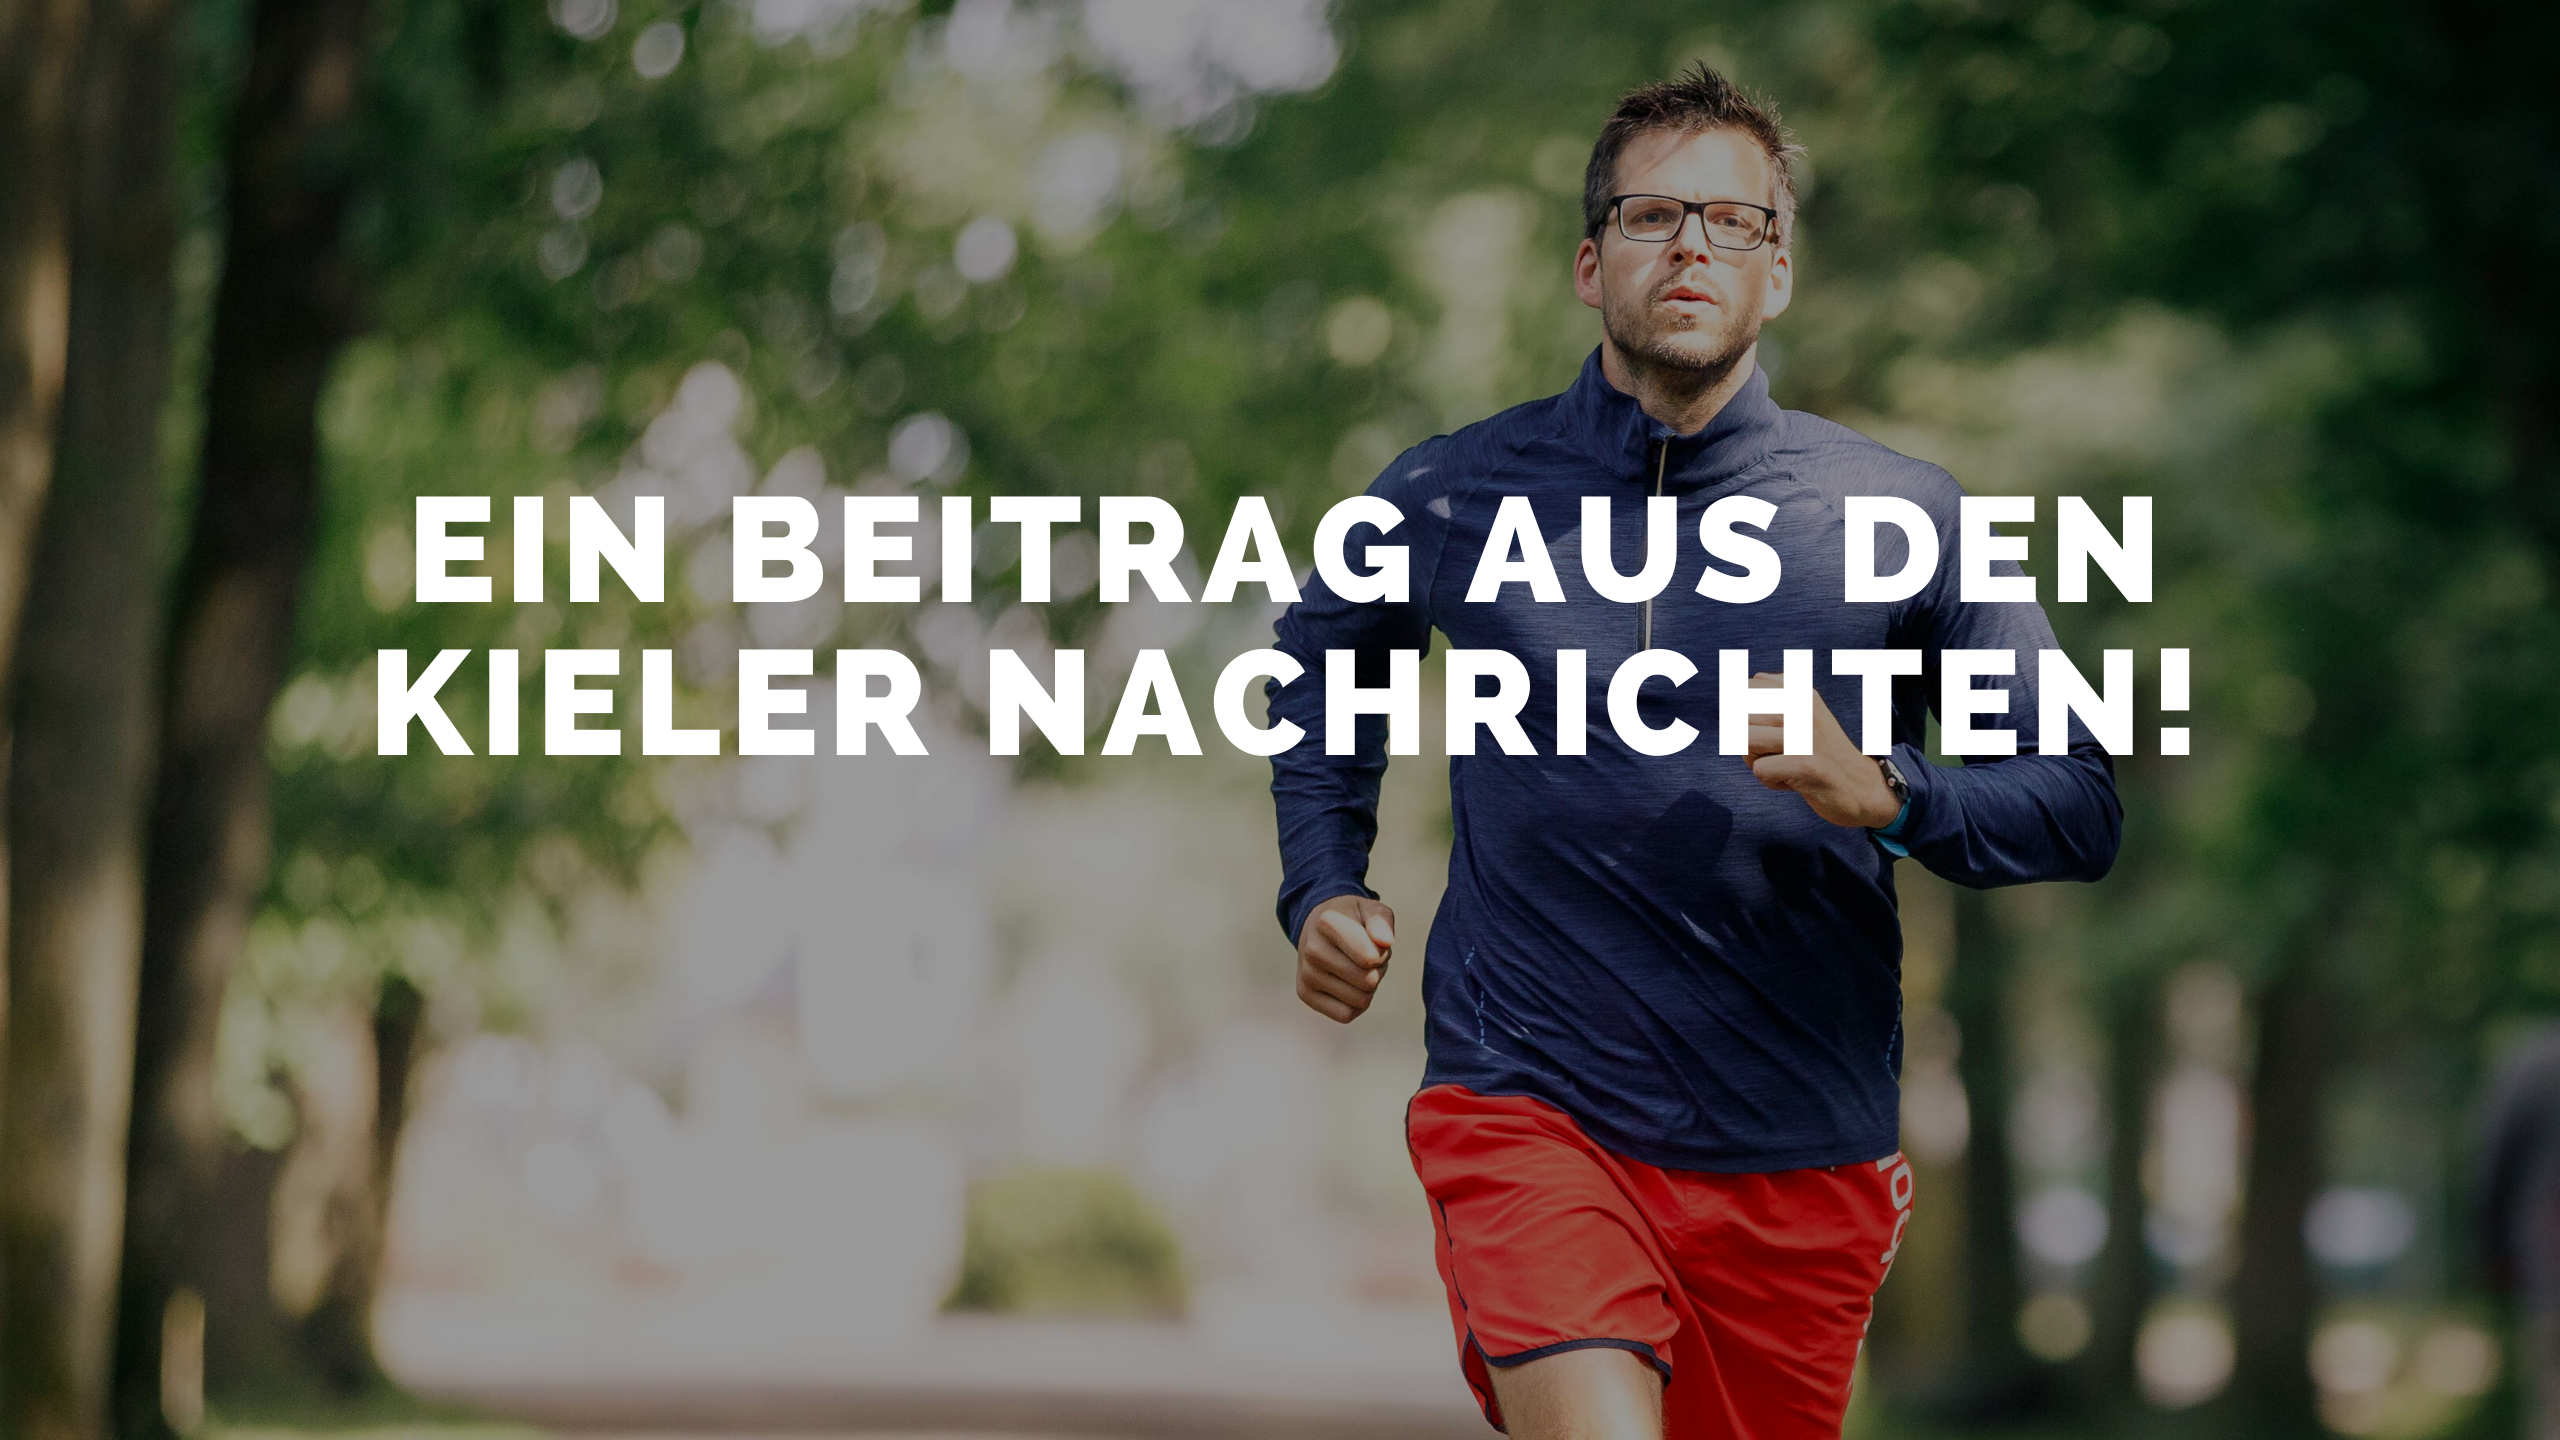 Laufen macht Spaß – Ein Beitrag aus den Kieler Nachrichten!